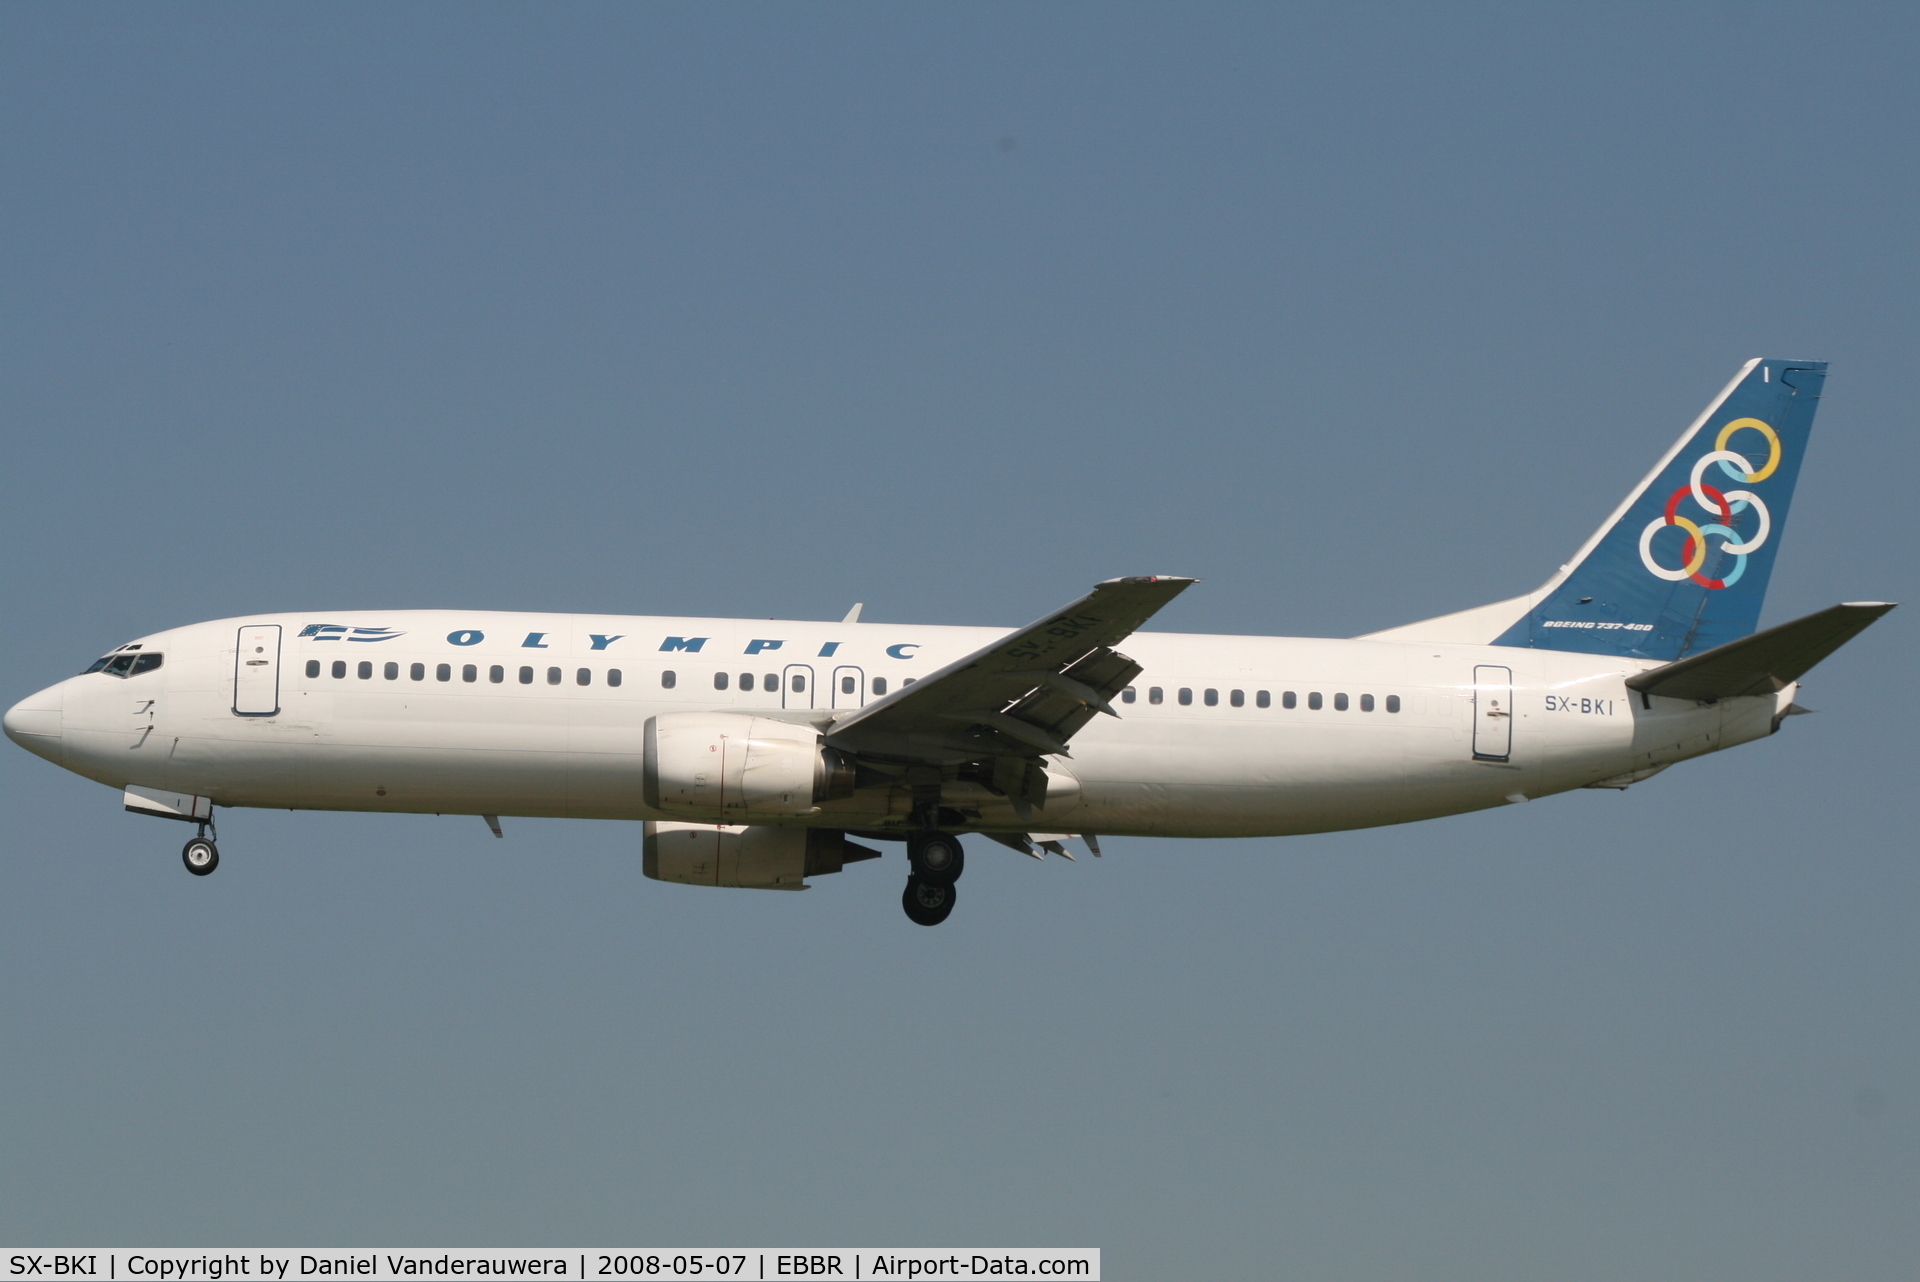 SX-BKI, 1990 Boeing 737-4Q8 C/N 24704/1855, flight OA145 is descending to rwy 25L